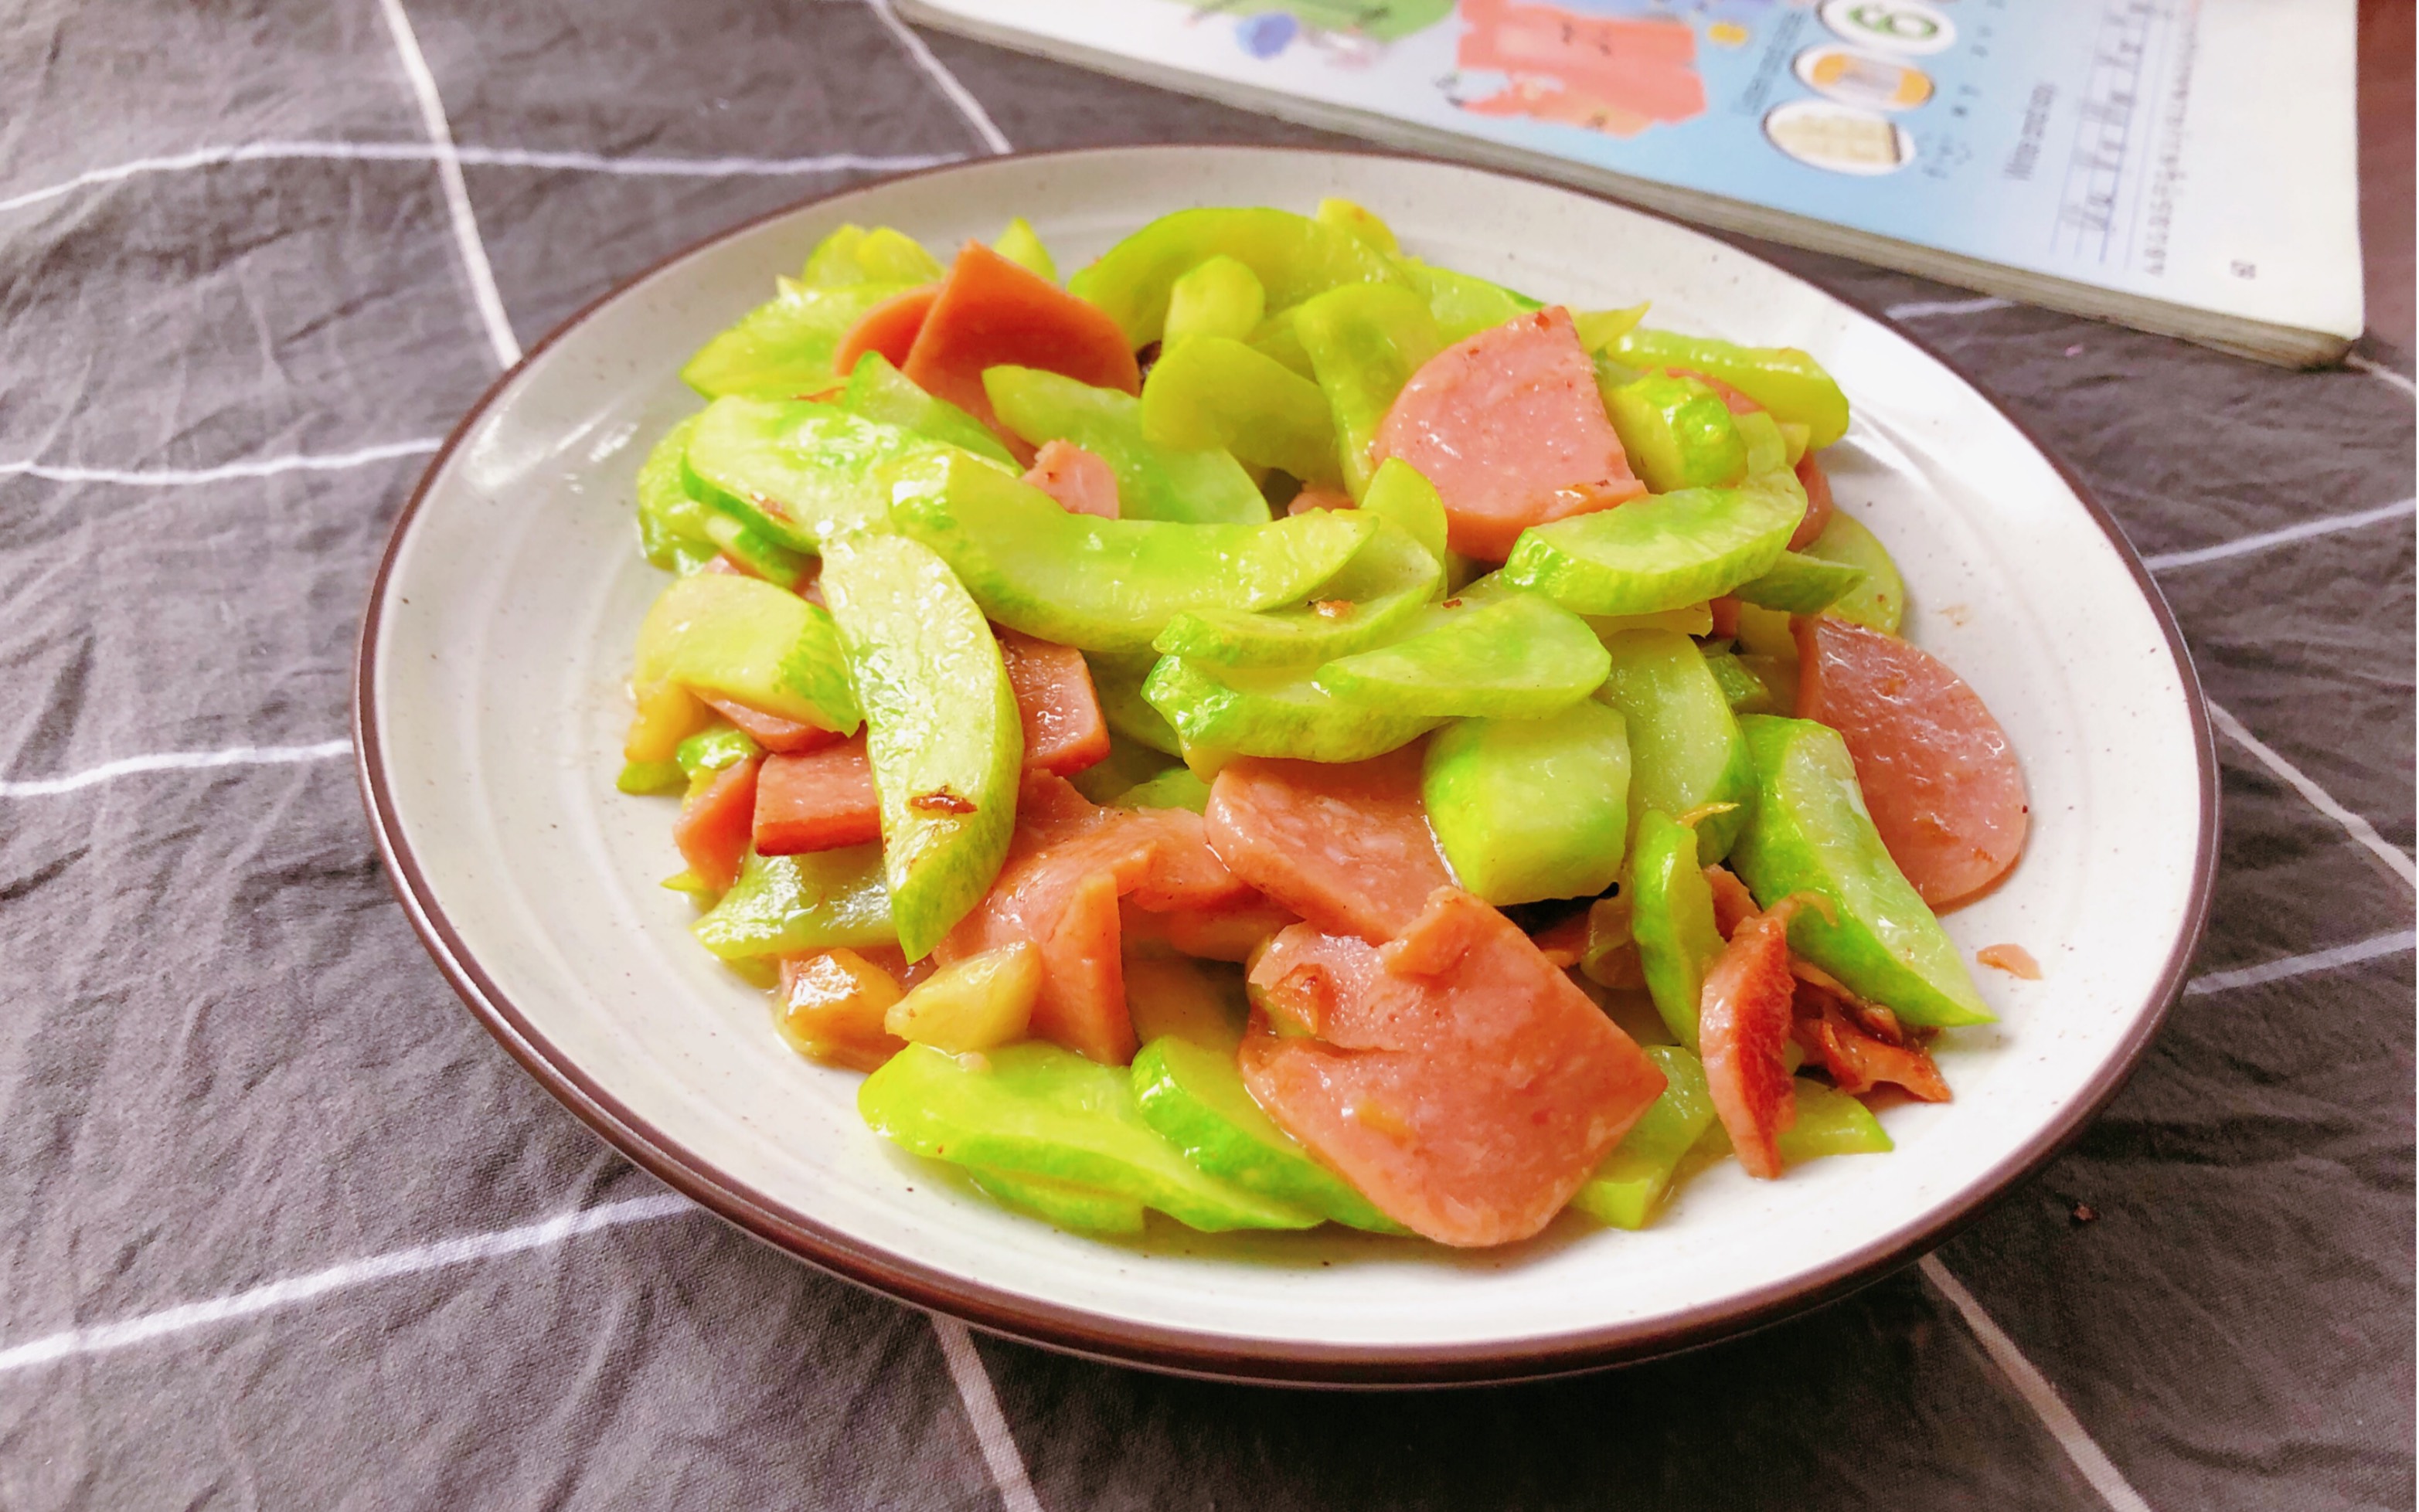 简单又美味的家常菜,黄瓜炒火腿肠一起制作吧!